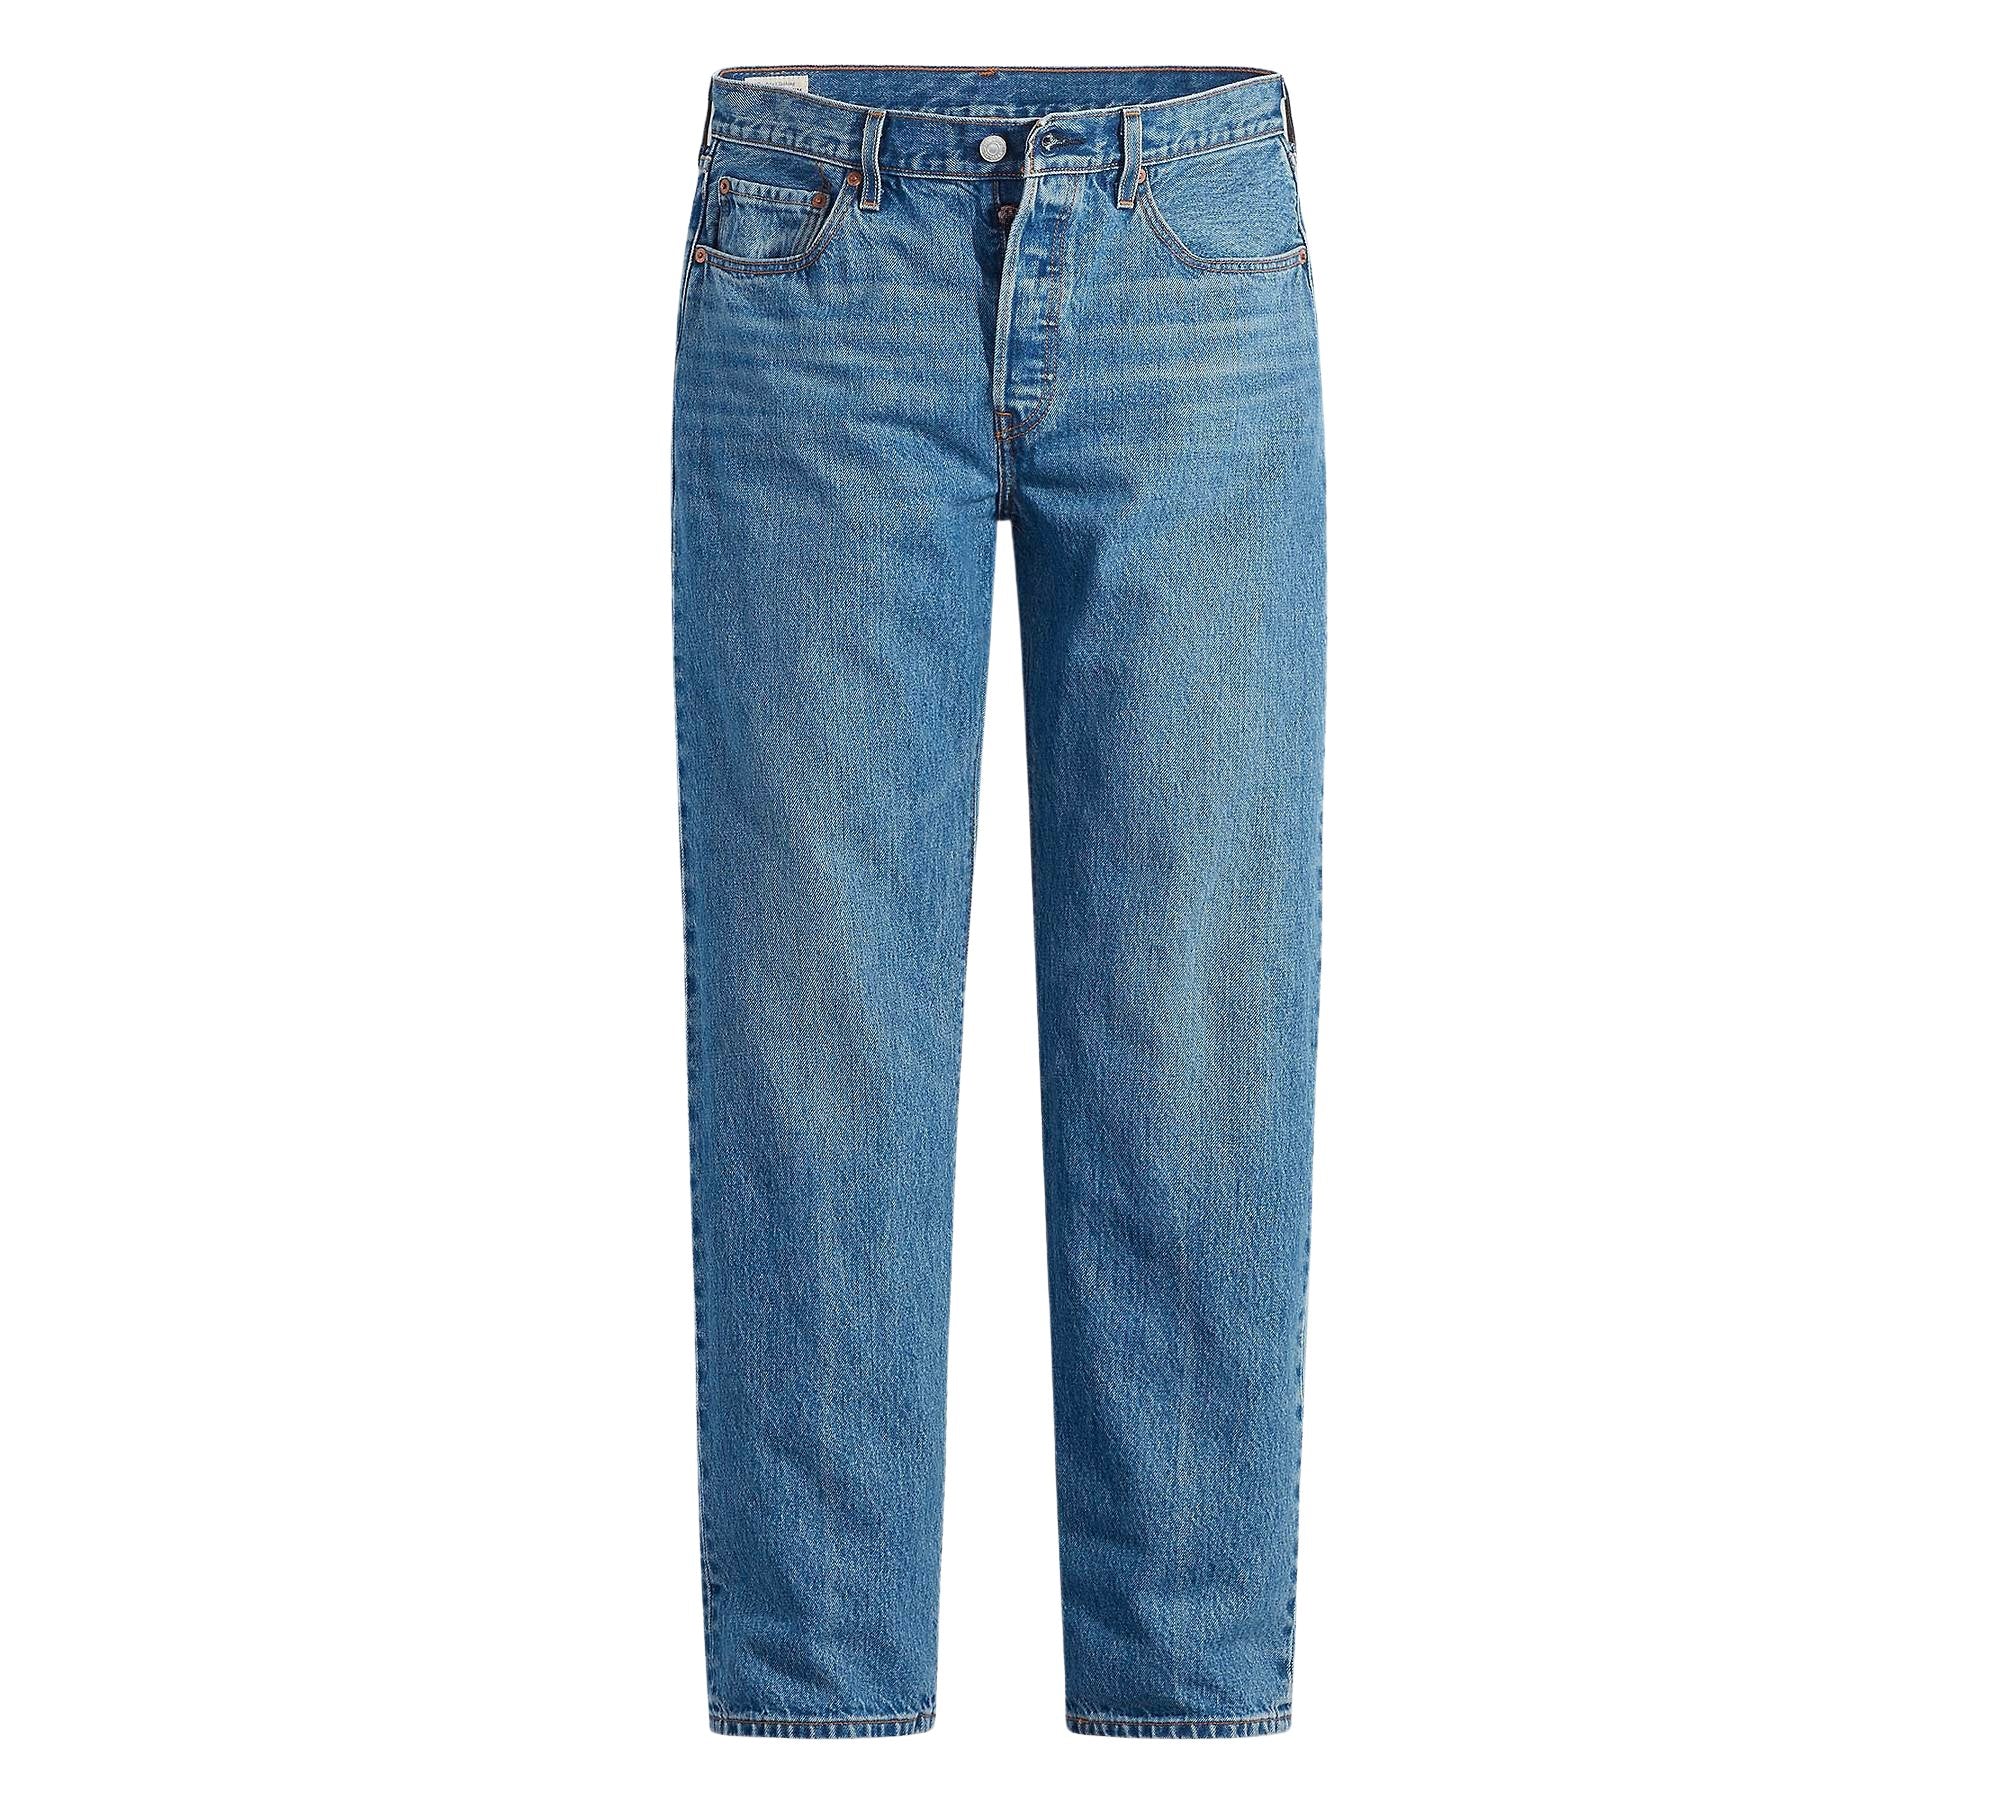 Vintage Levi's Classic Blue Jeans - Waist 33 - Length 32 - Vintage Superstore Online